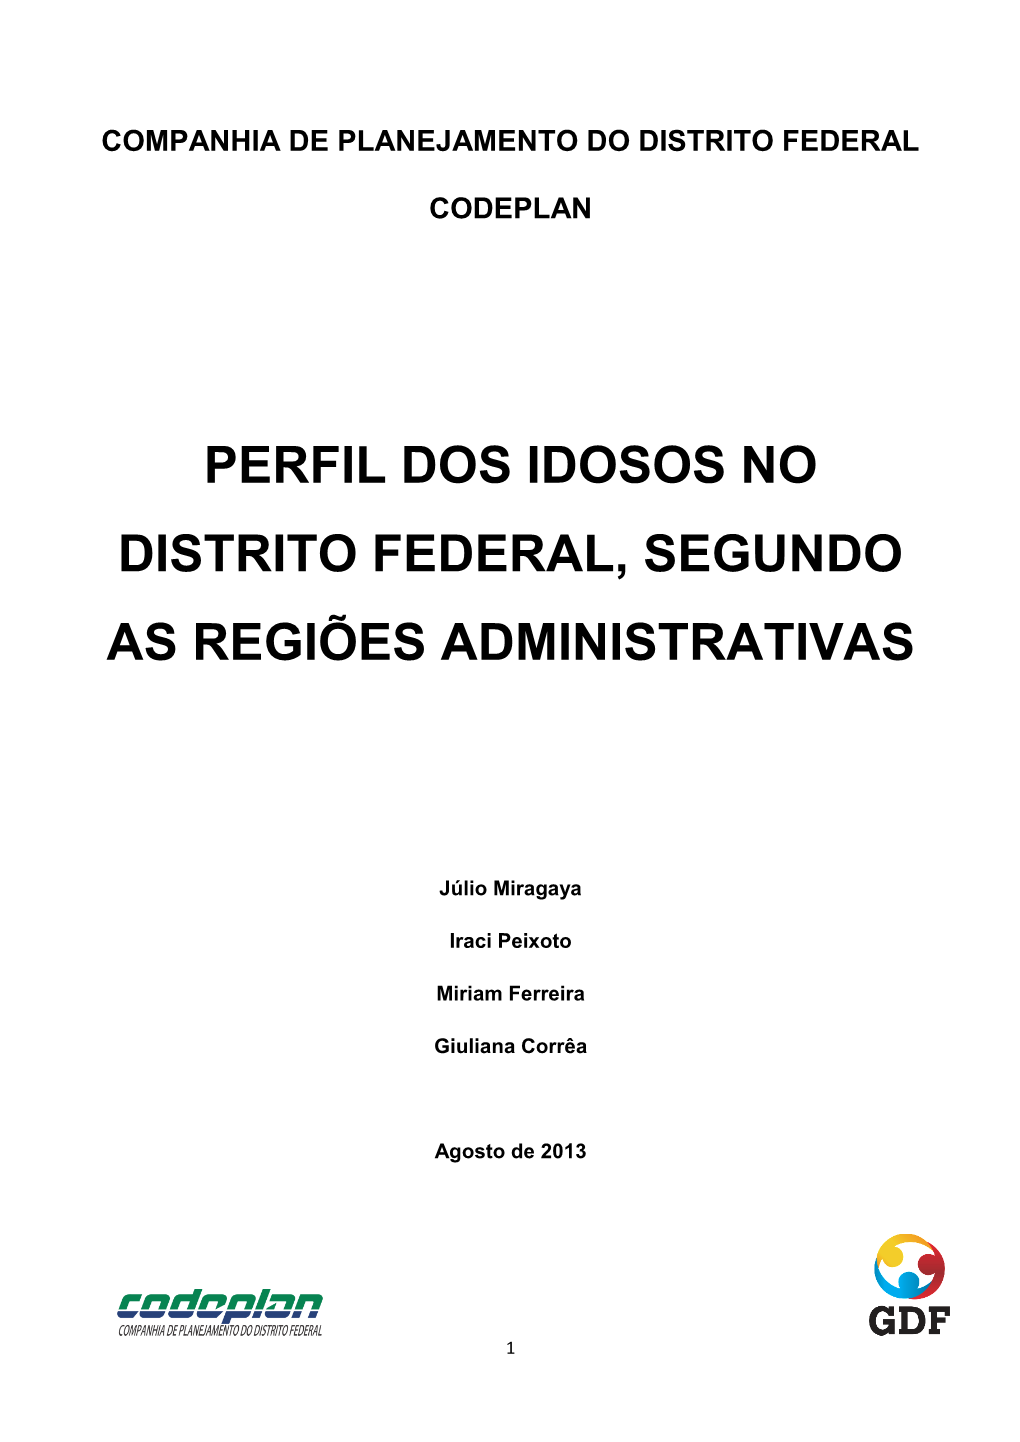 Perfil Dos Idosos No Distrito Federal, Segundo As Regiões Administrativas